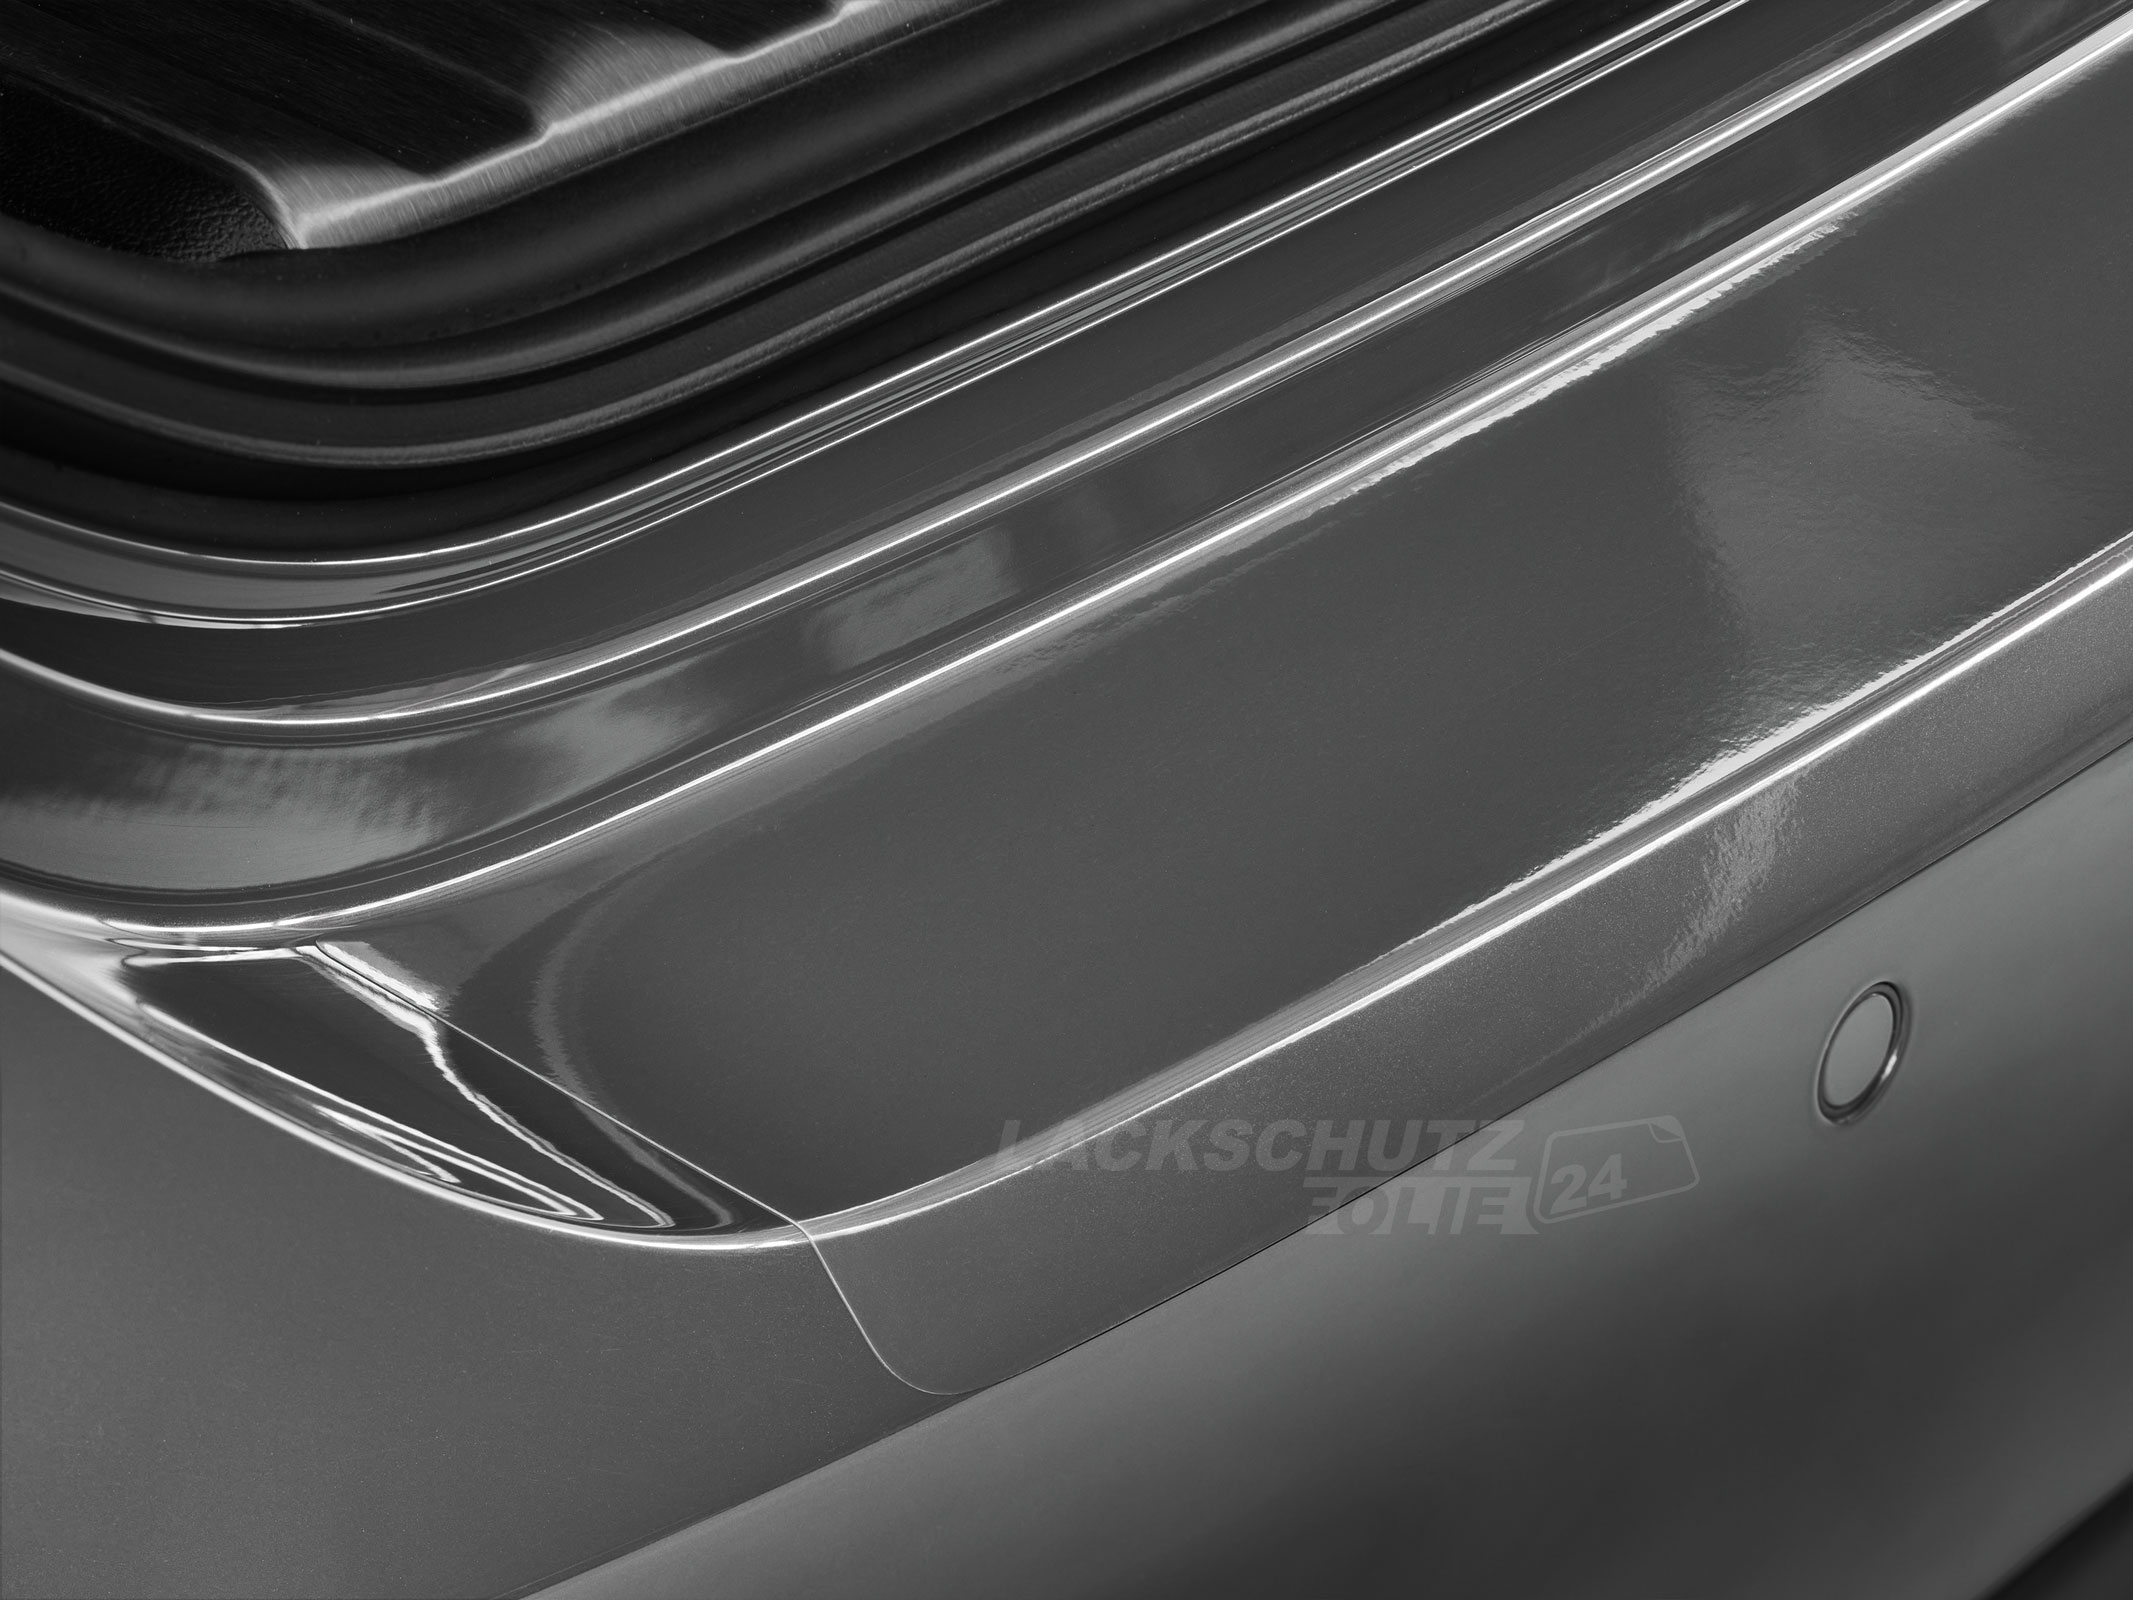 Ladekantenschutzfolie - Transparent Glatt Hochglänzend 150 µm stark für Suzuki Ignis (III) ab BJ 01/2016 + Facelift